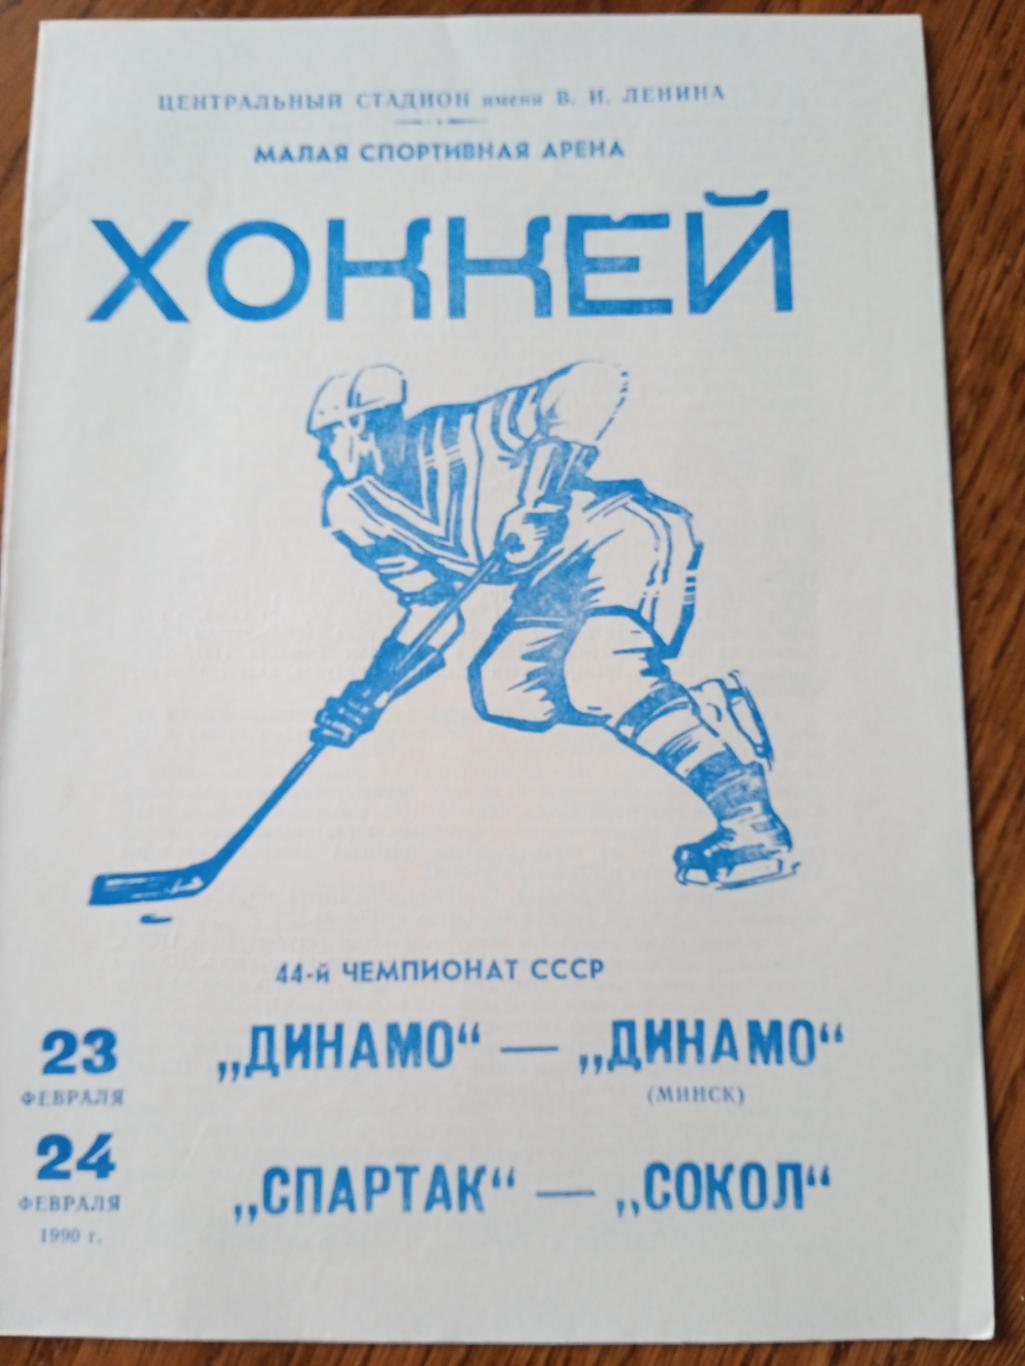 Динамо-Динамо(Минск)/ Спартак- Сокол - 23/24.02.1990